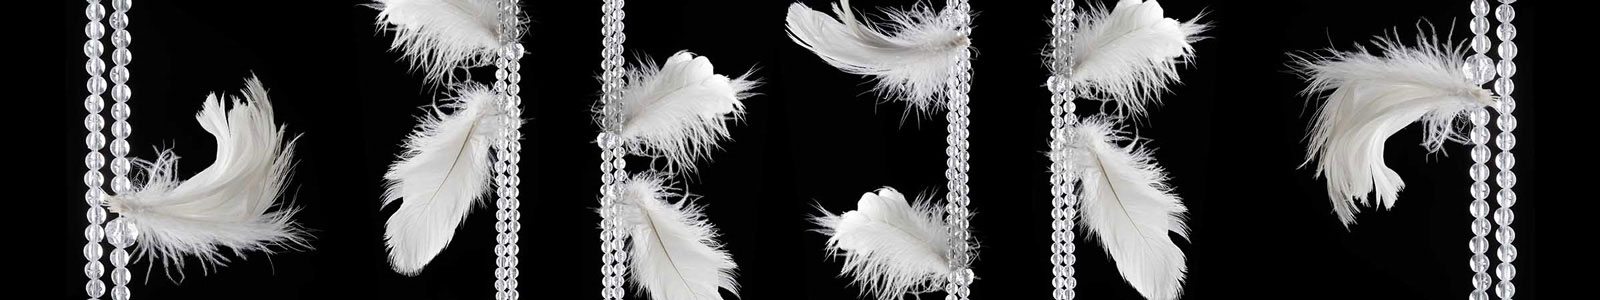 №2777 - Белые перья, висящие на украшениях